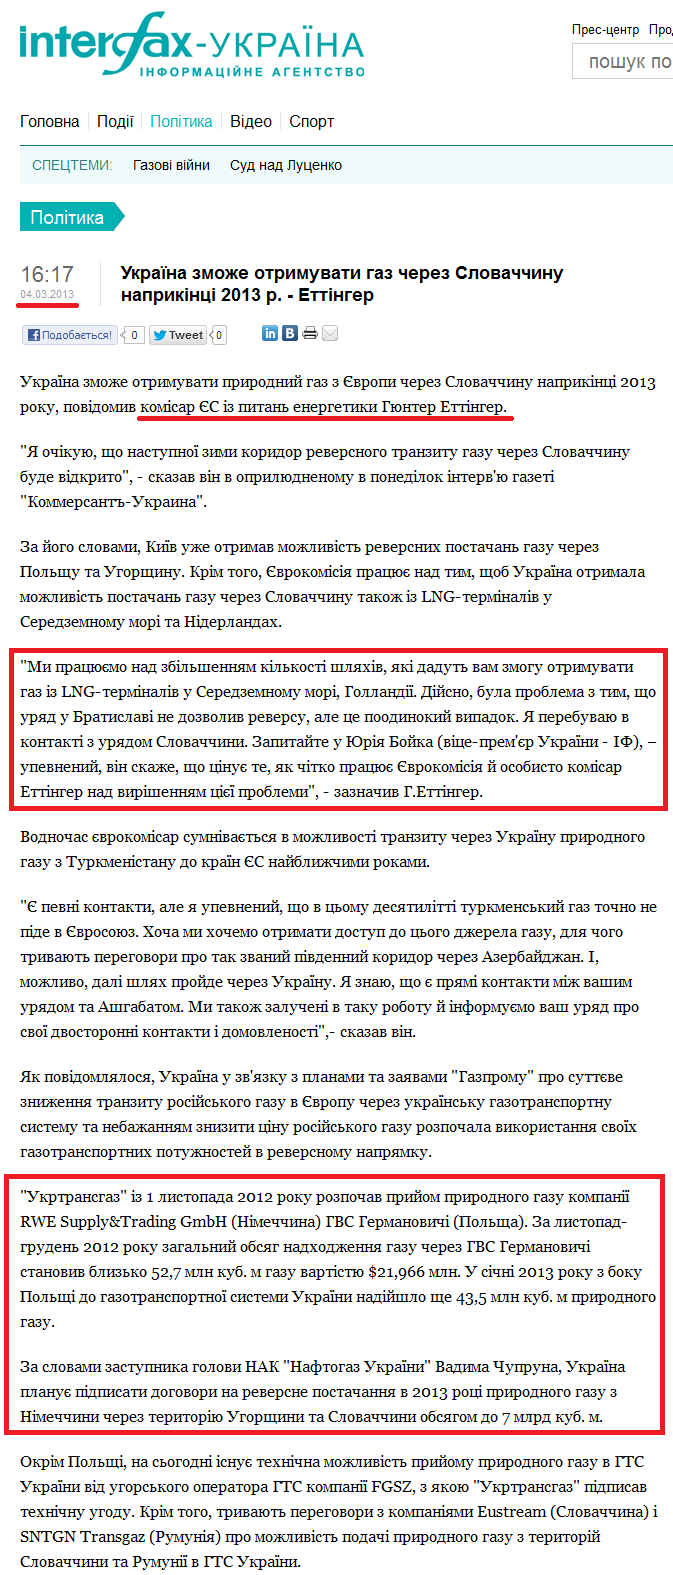 http://ua.interfax.com.ua/news/political/143281.html#.UUxVvzeAzyM